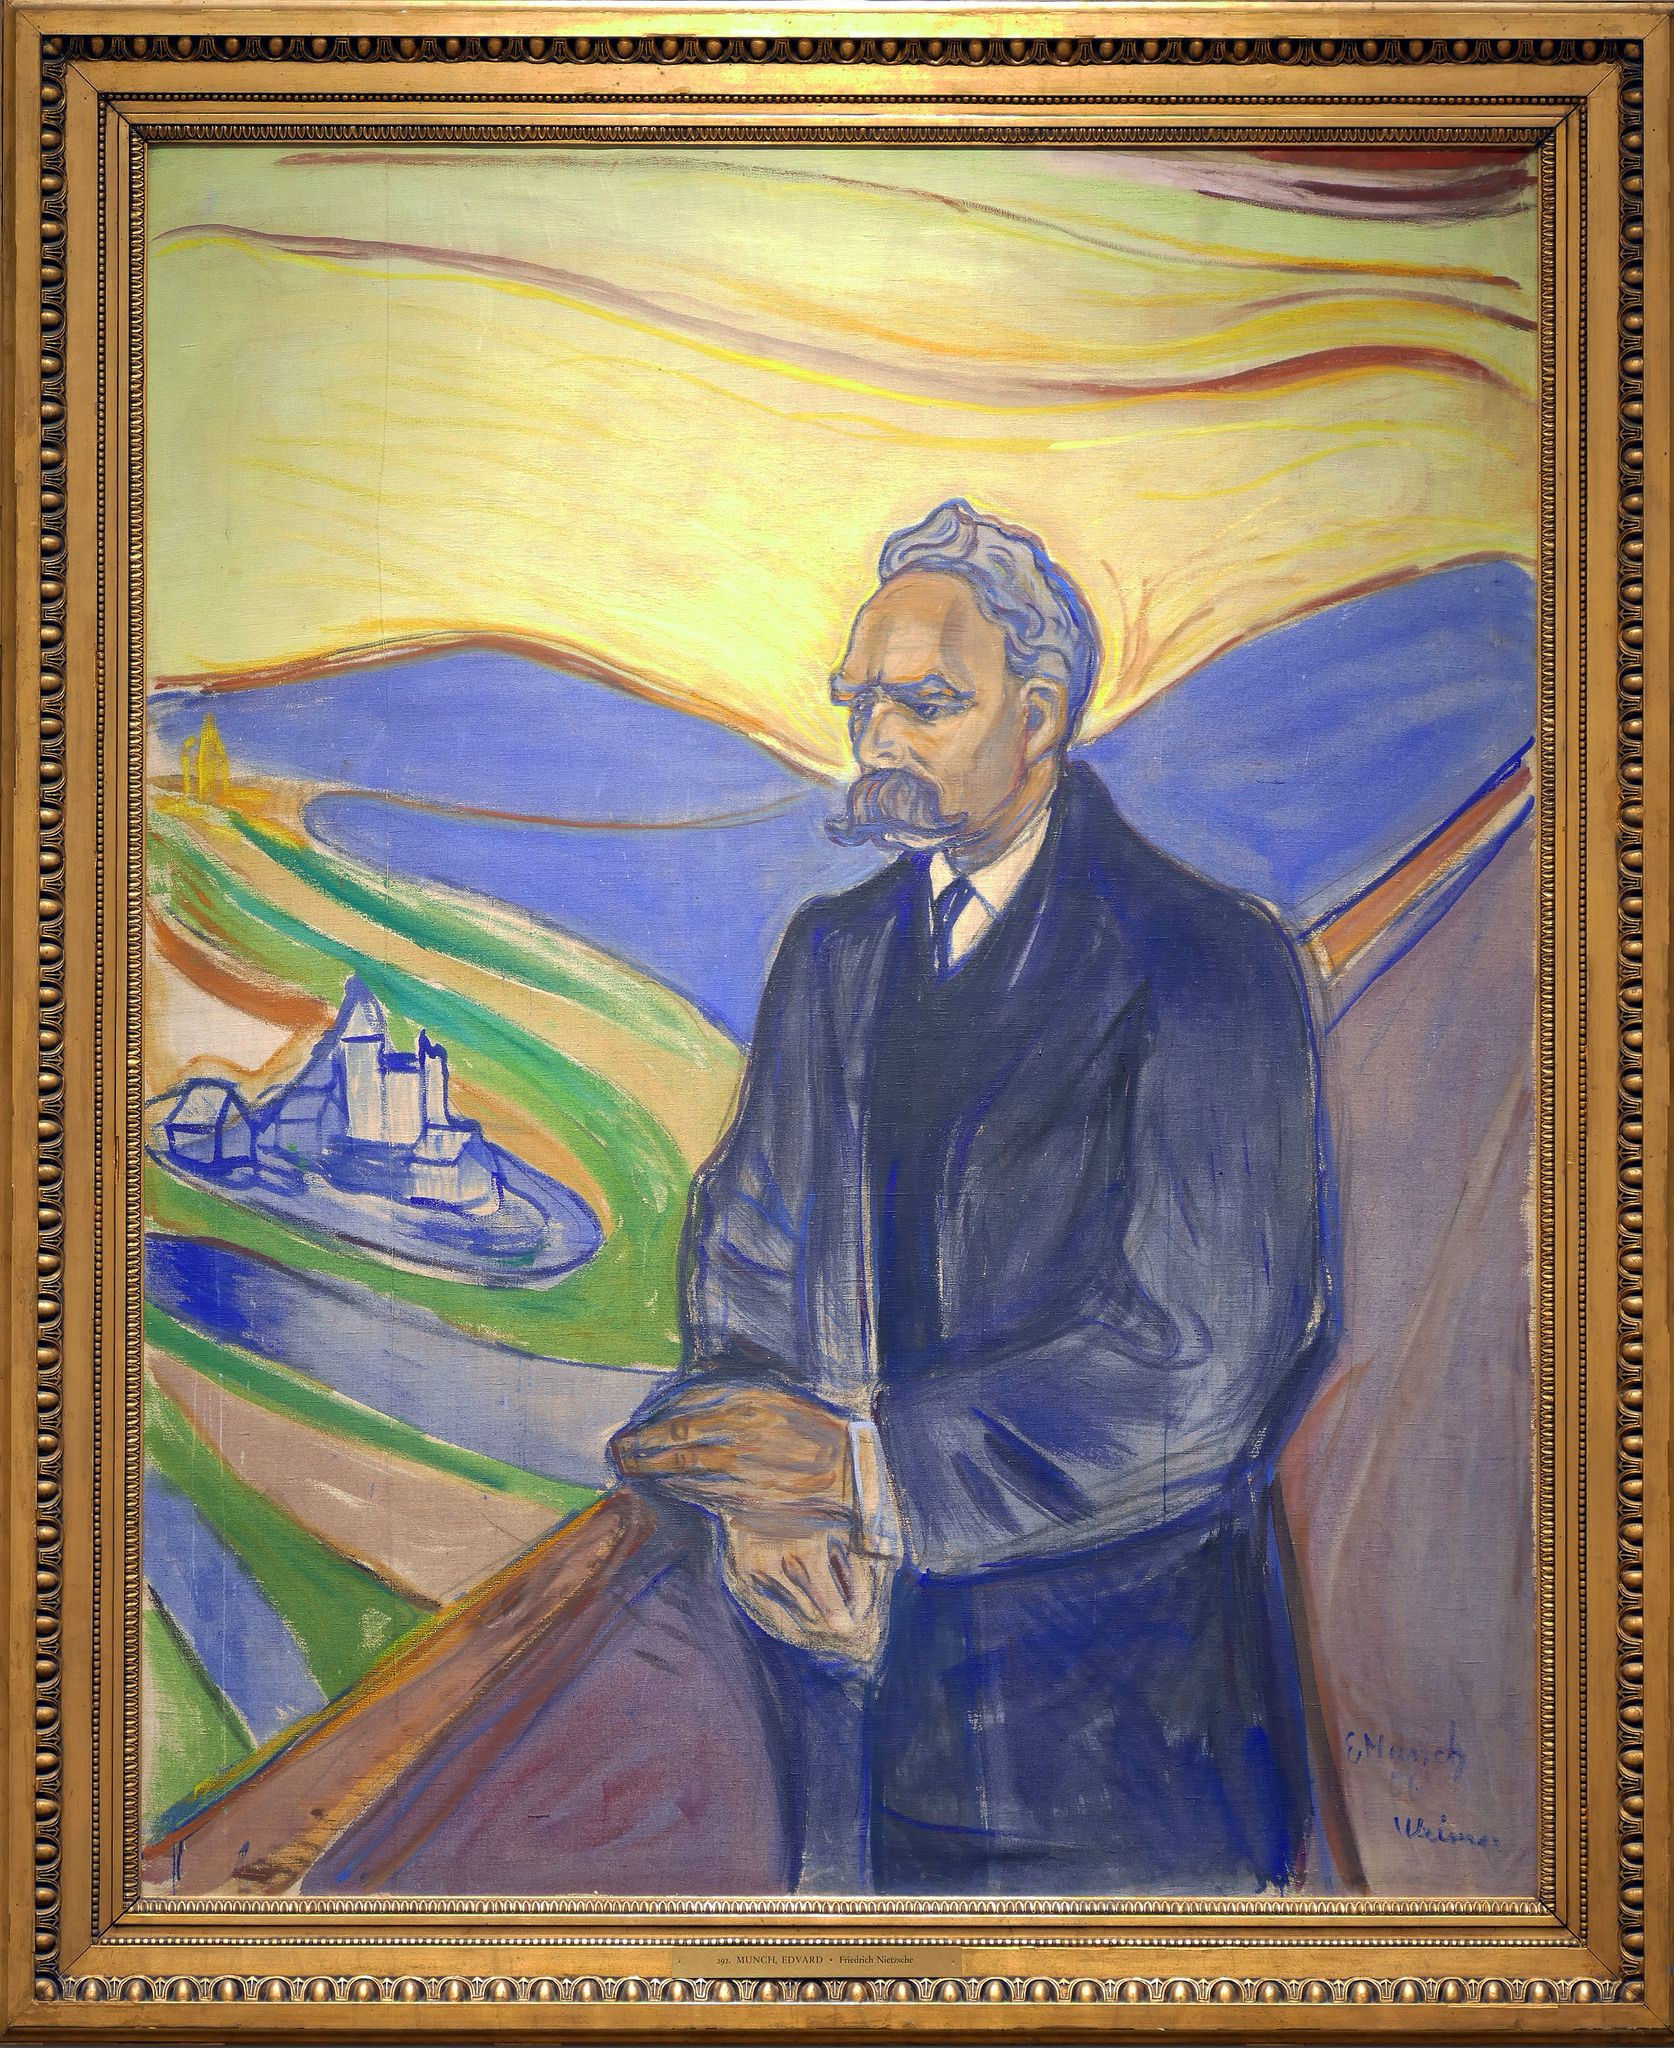 Porträt von Friedrich Nietzsche, gemalt von Edvard Munch im Jahr 1906, dieser bekannte expressionistische Maler war vor allem für sein berühmtes Gemälde „Der Schrei“ bekannt.